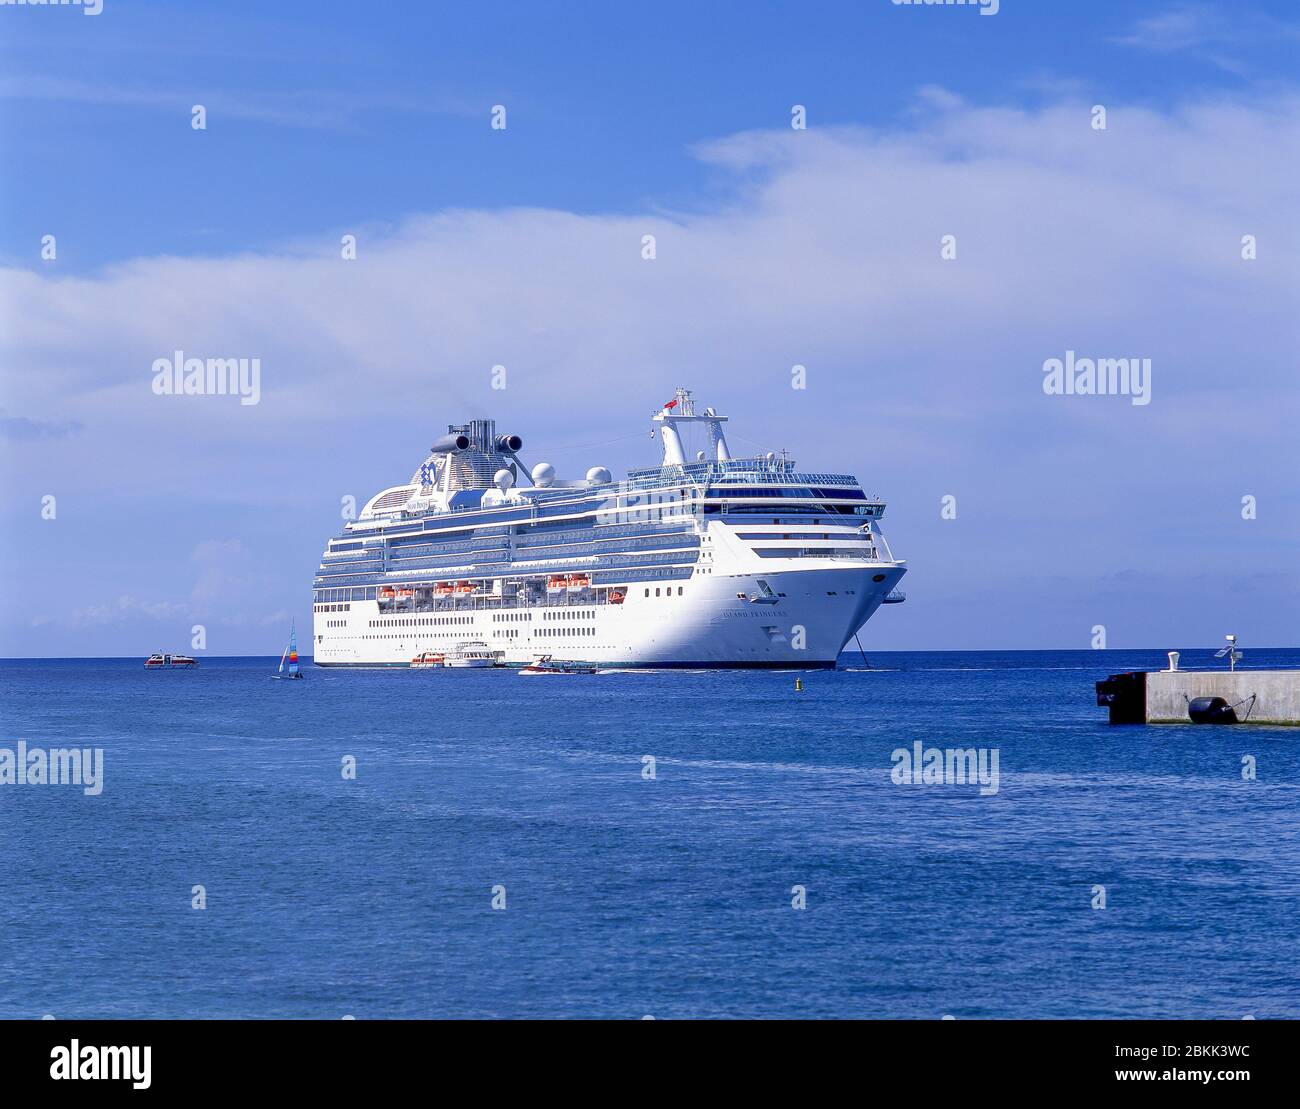 Princess Cruises crociera 'isola principessa' ormeggiata al largo di Napoli (Napoli), Campania, Italia Foto Stock